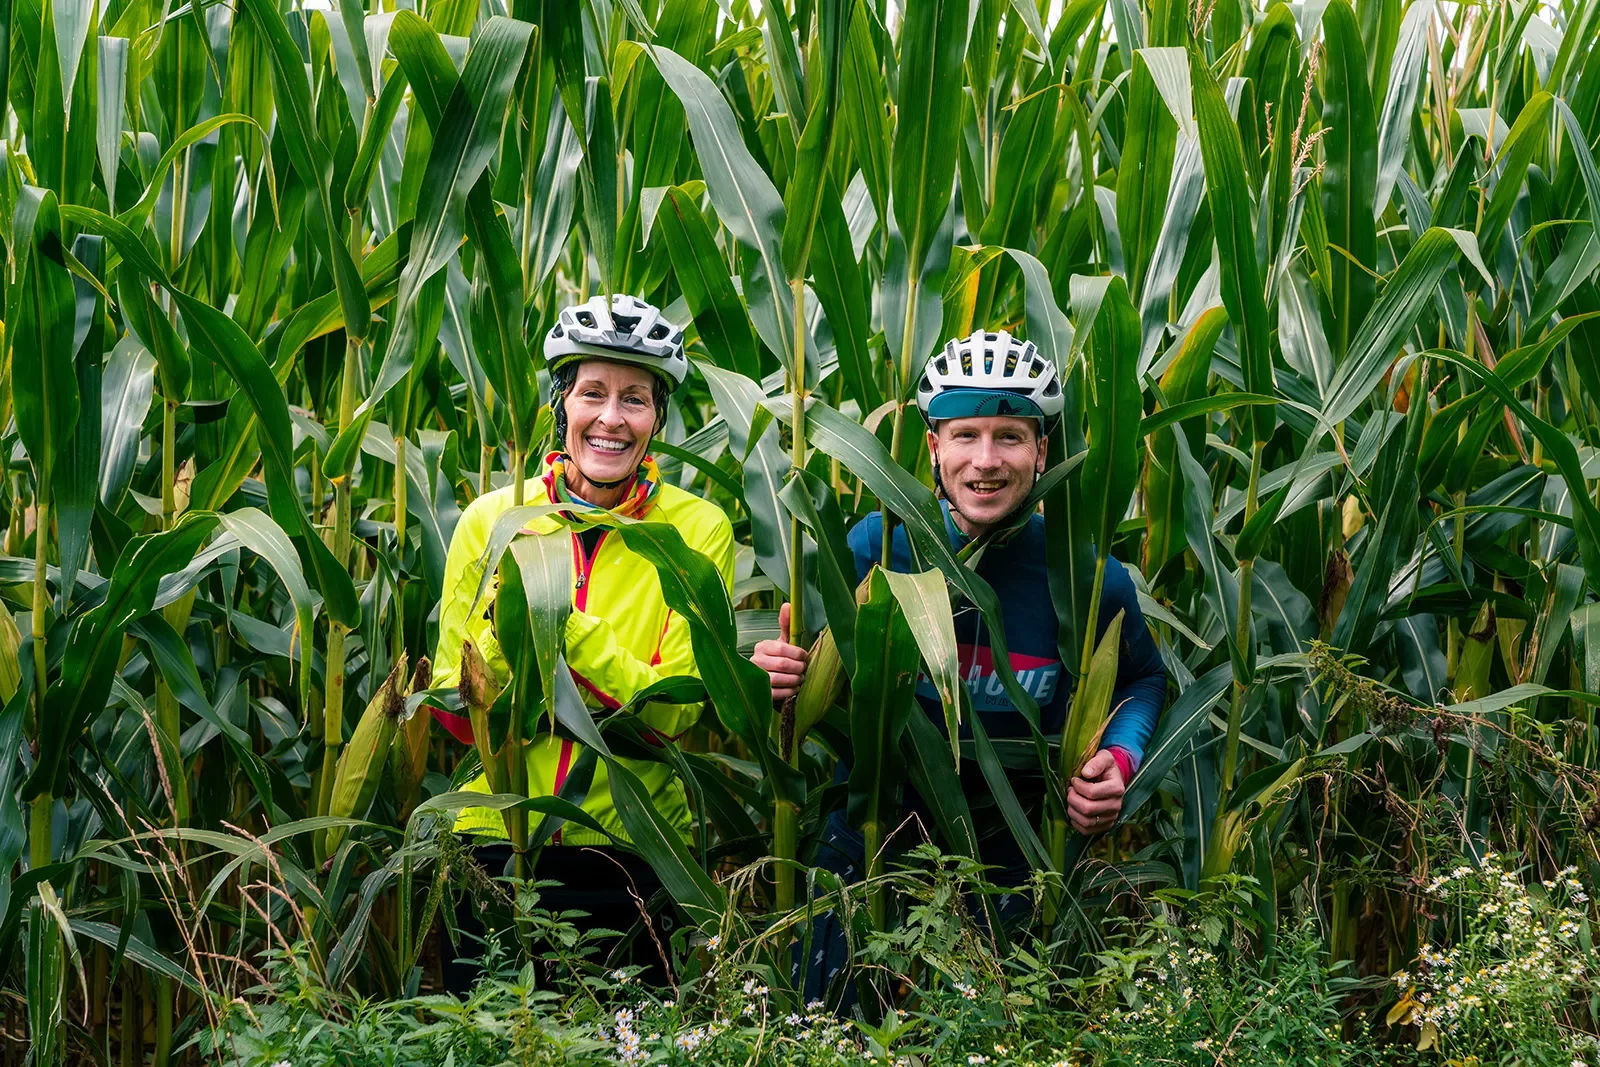 Two bikers in a field